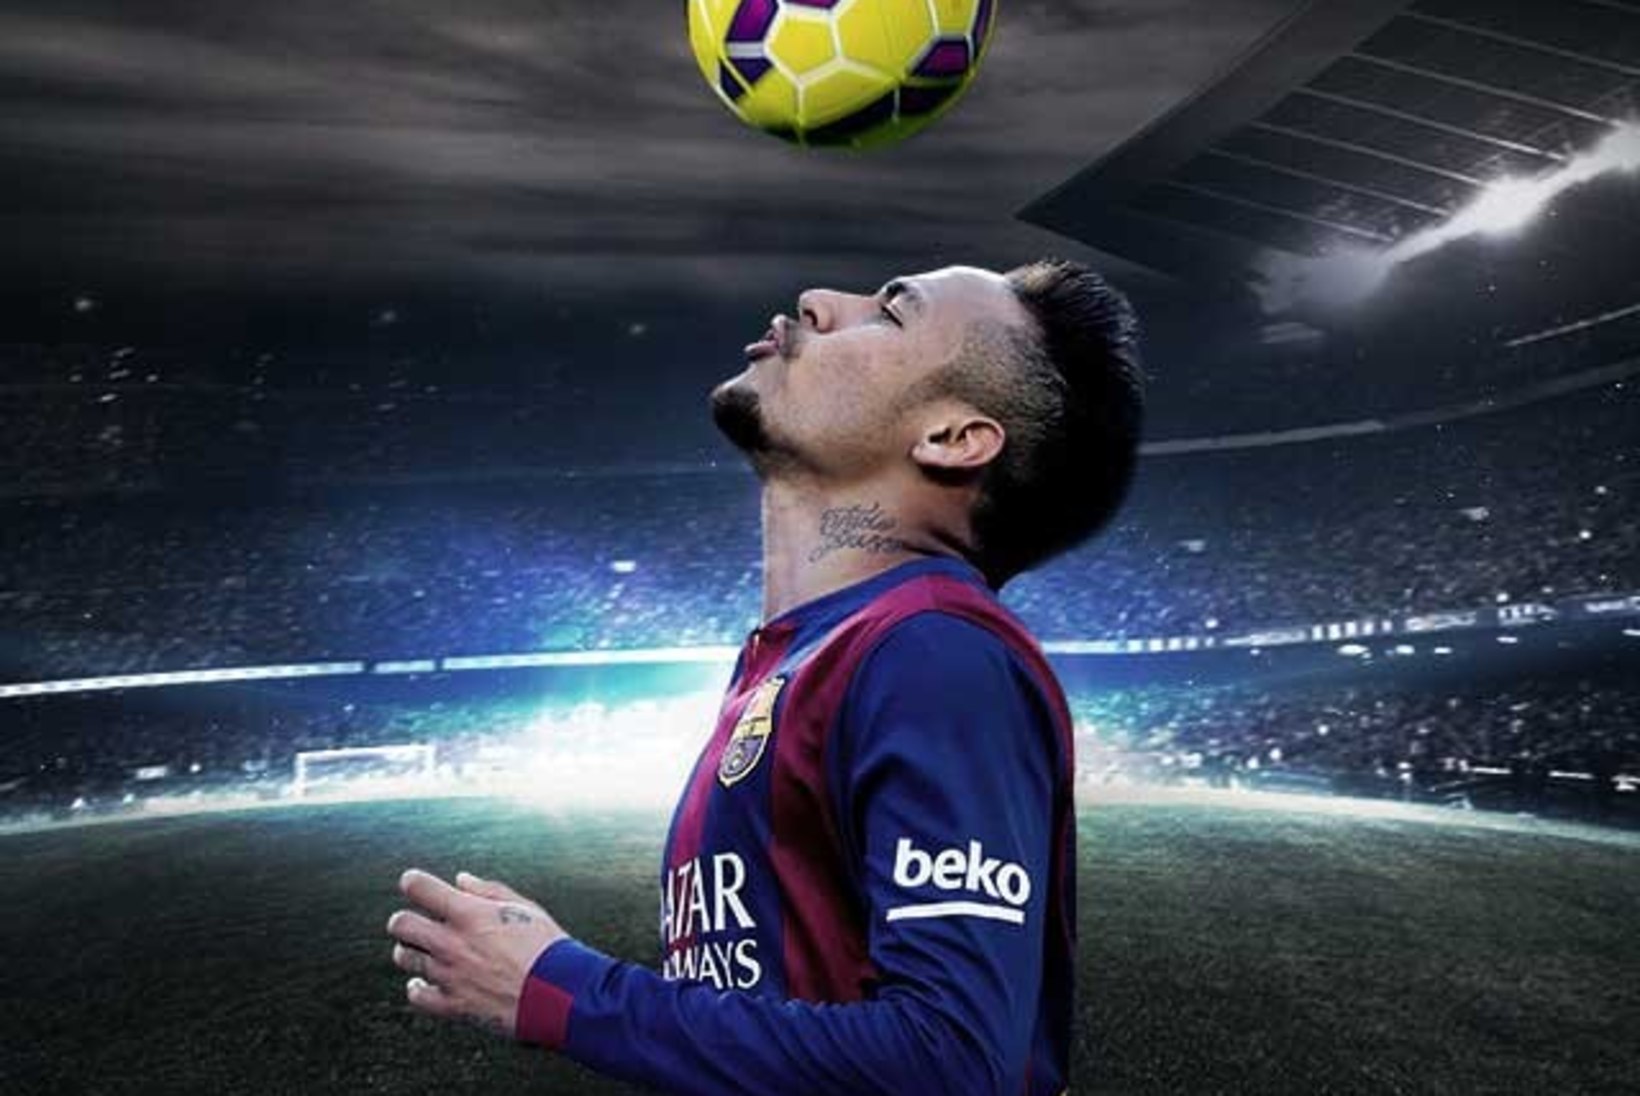 Valga trikijalgpallur lõi Barcelona kodustaadionil kaks väravat